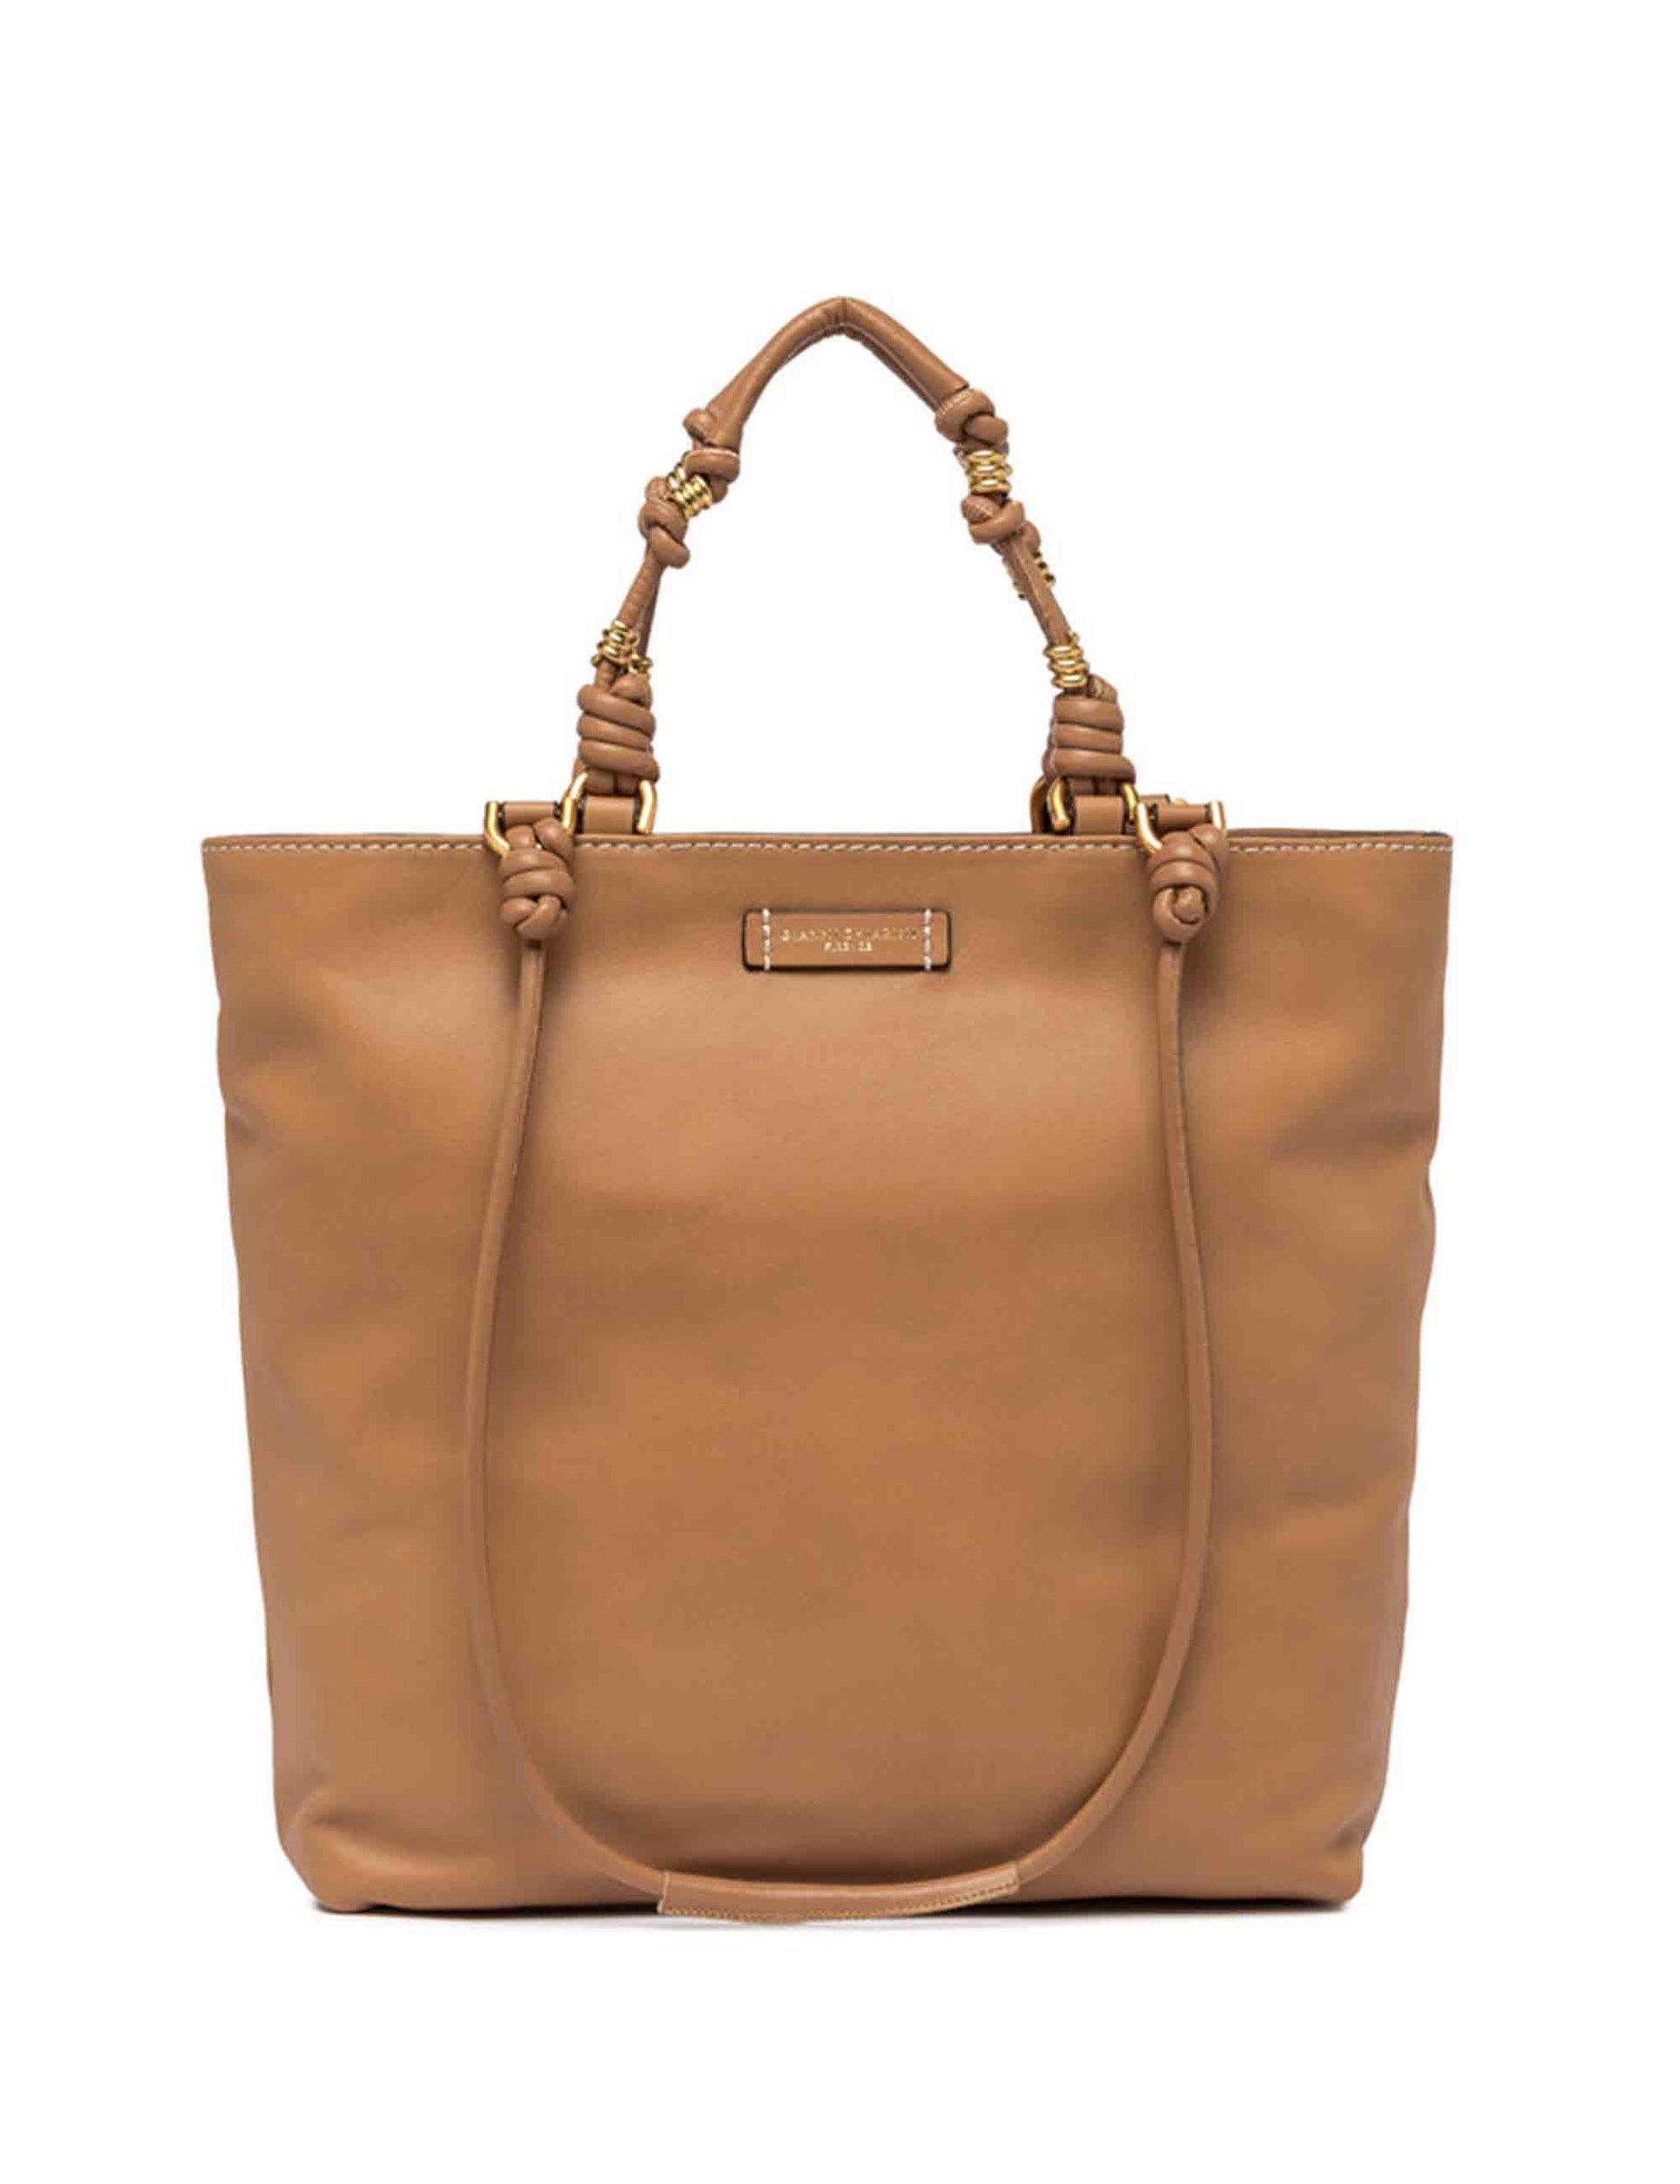 Shopping bag donna Camilla in pelle cuoio con doppi manici